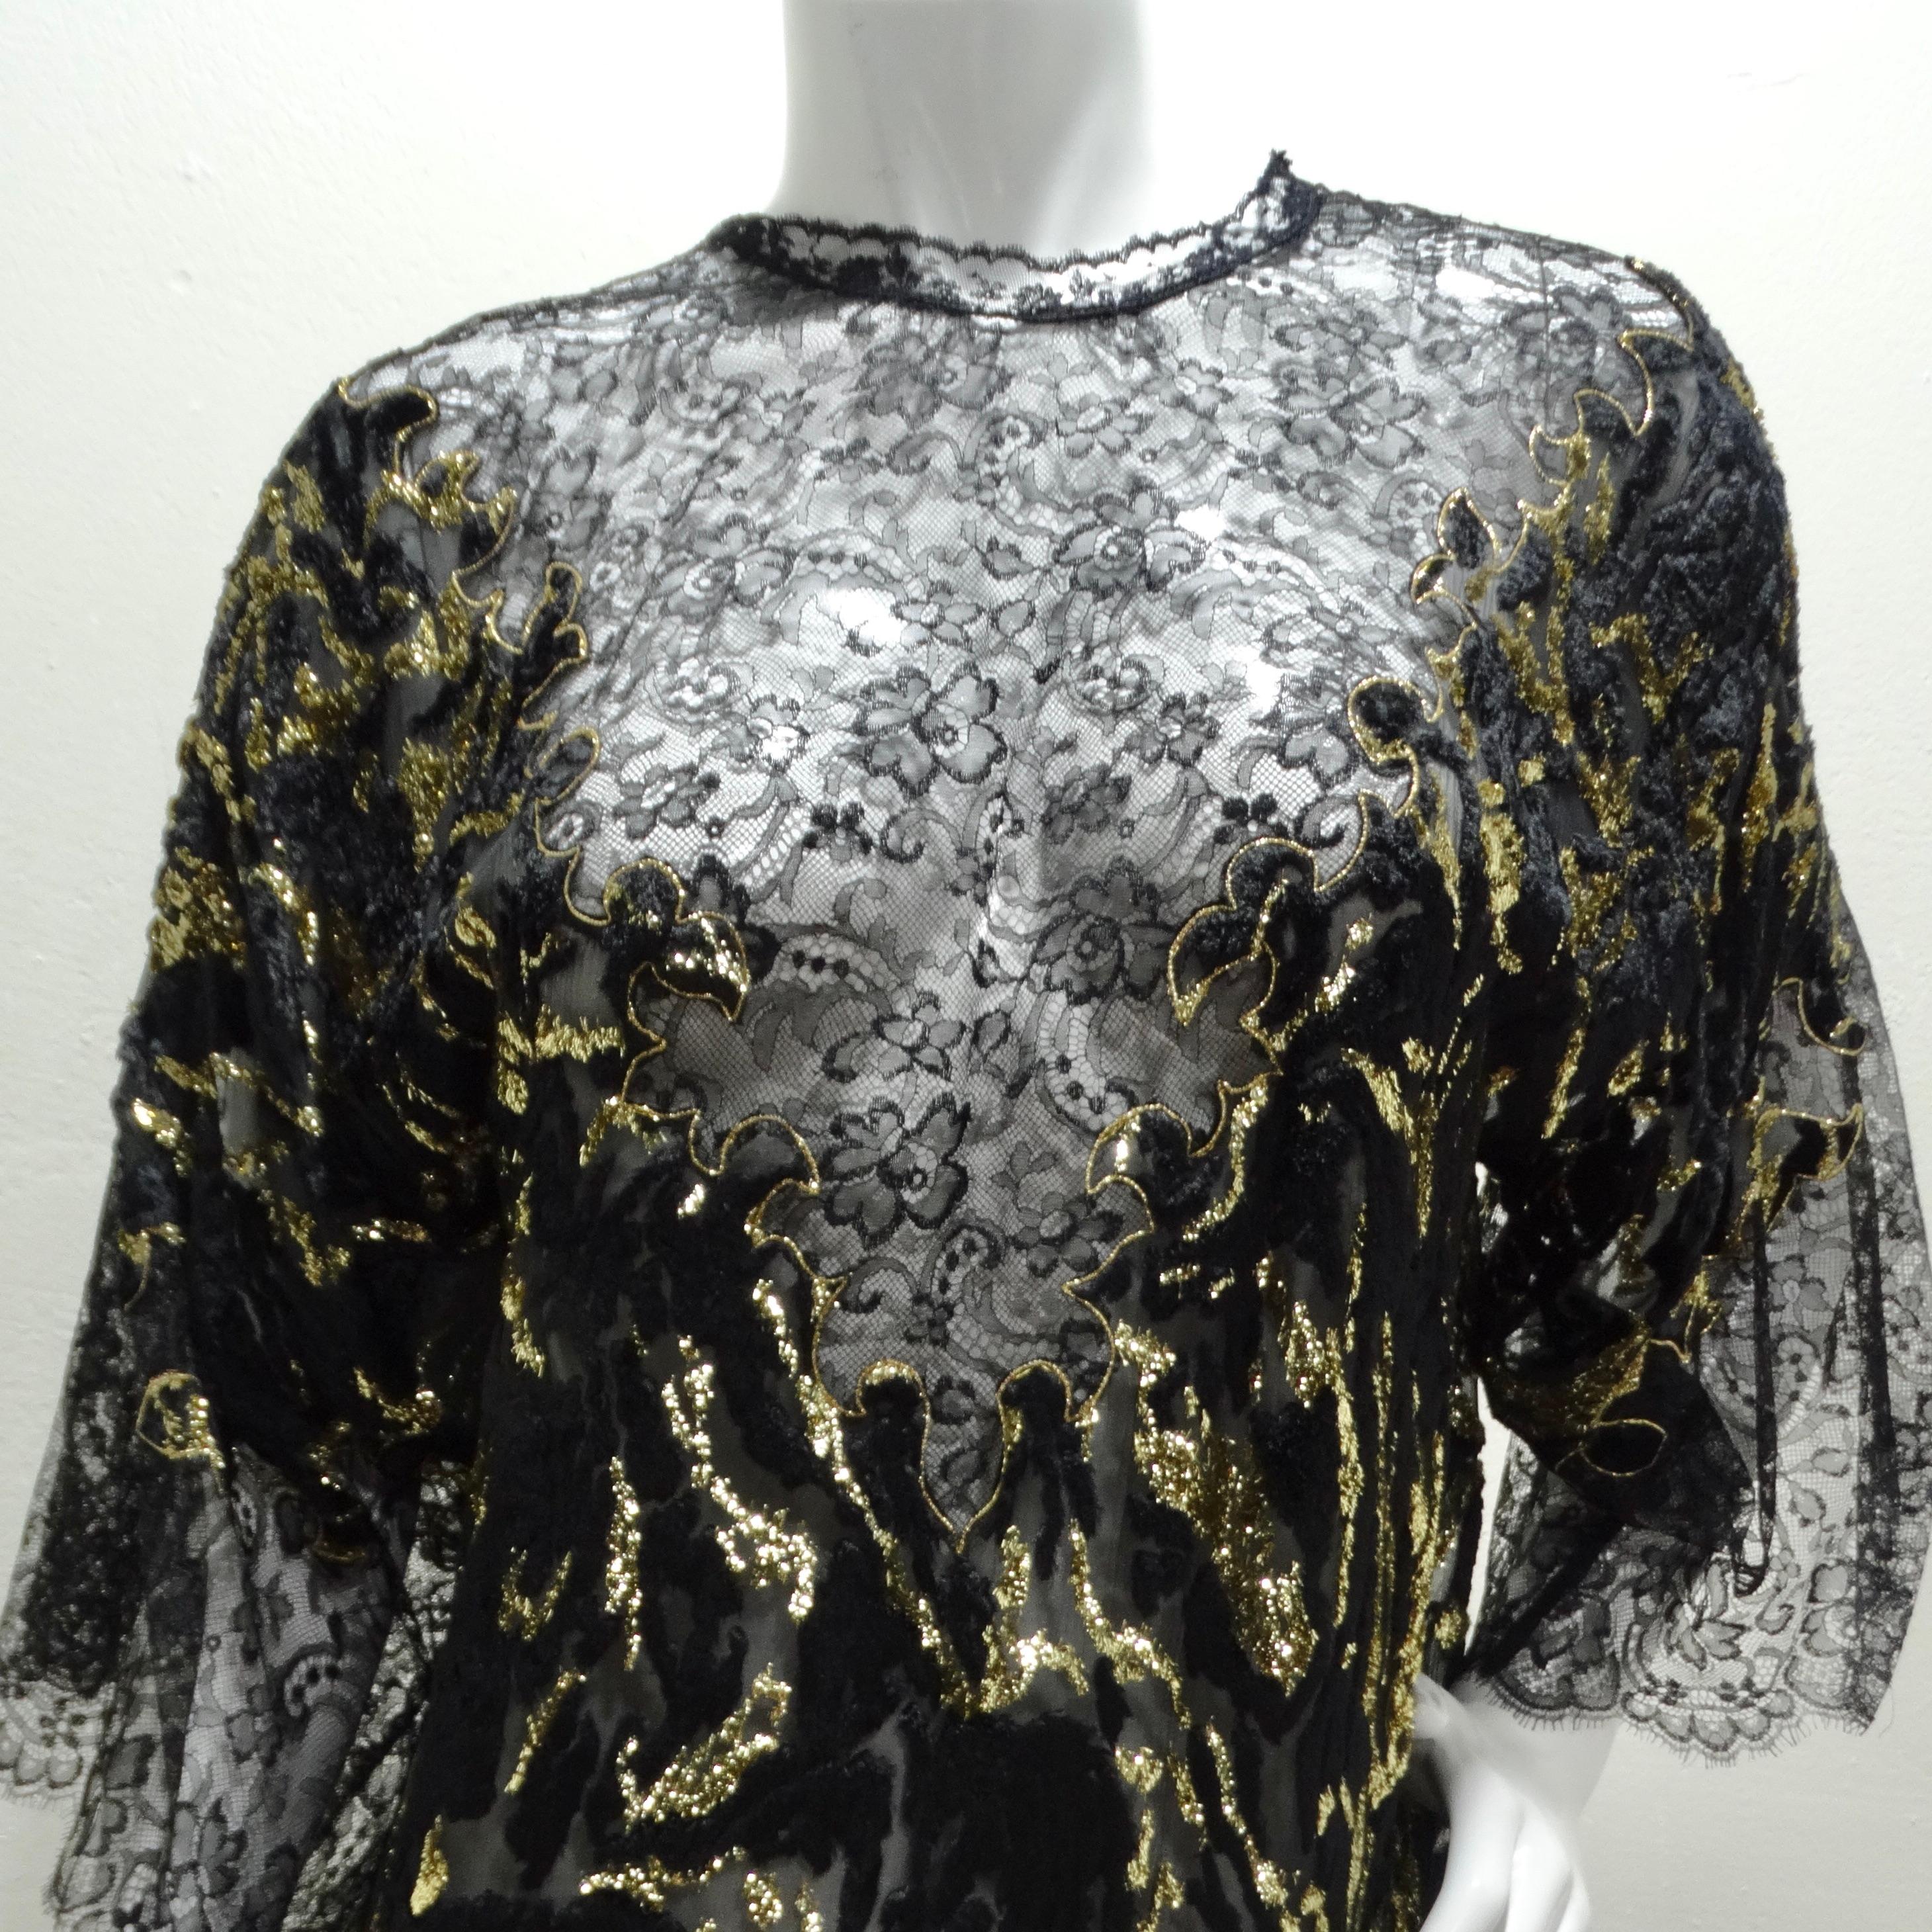 Illuminez la nuit avec la robe en dentelle de velours noir métallisé et or des années 1980 ! La robe est confectionnée dans un tissu unique de dentelle de velours noir, ajoutant une touche de sophistication et de texture à l'ensemble. La teinte